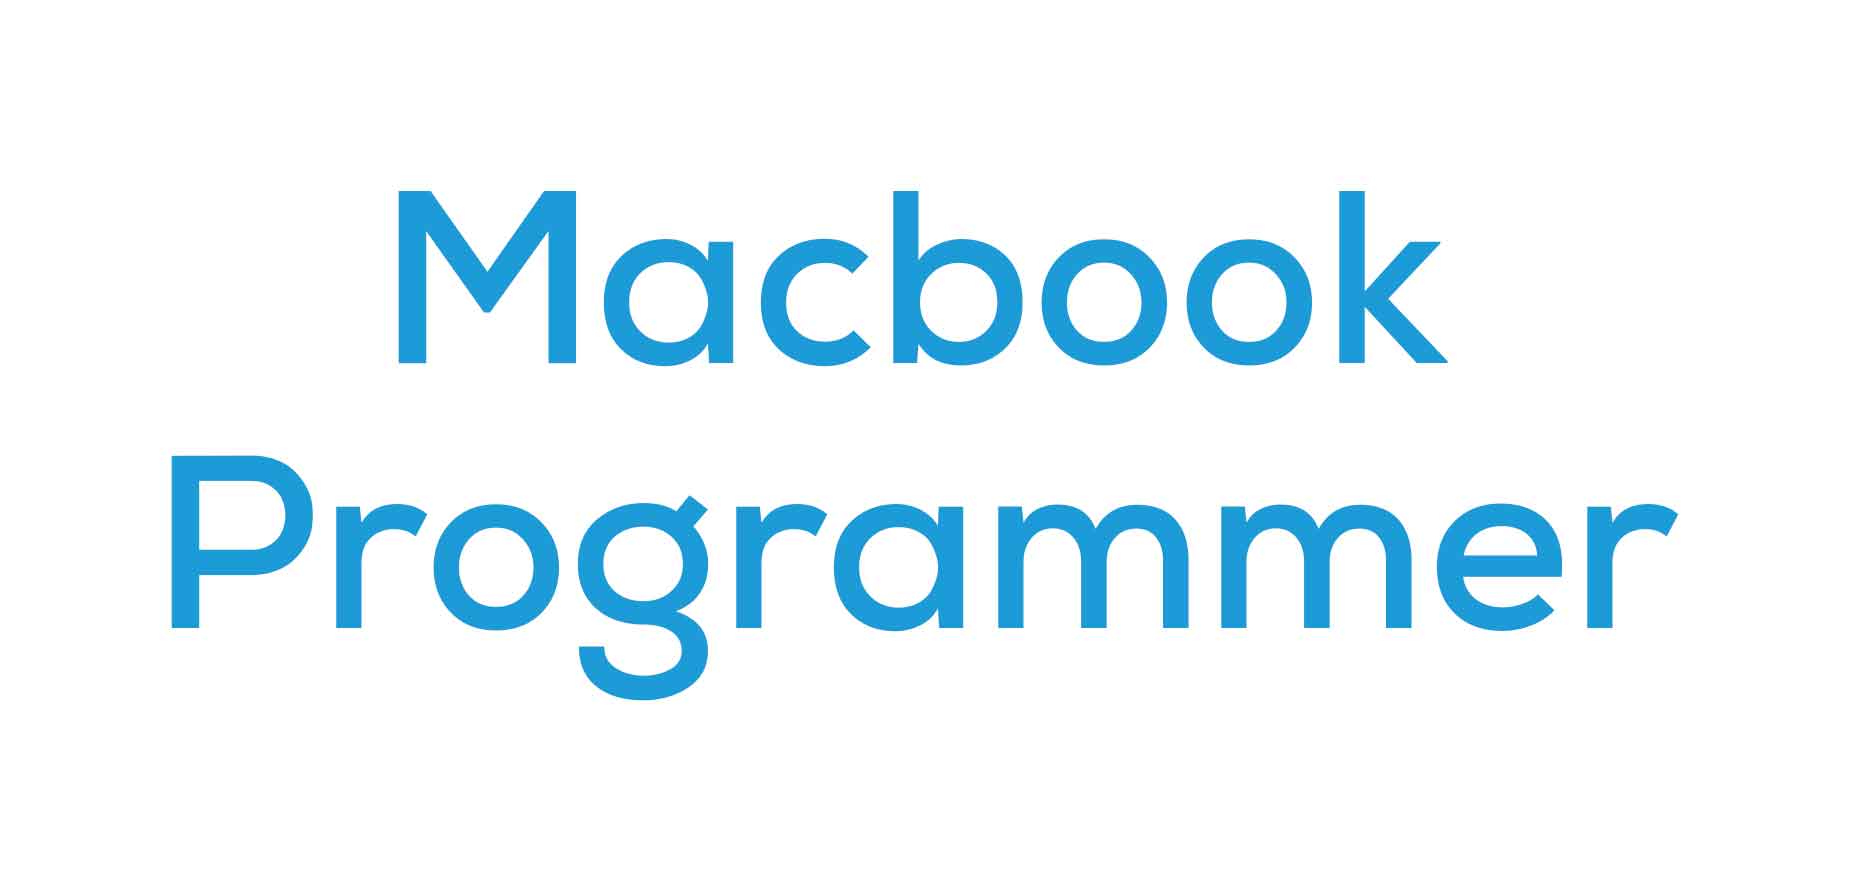 Macbook Programmer